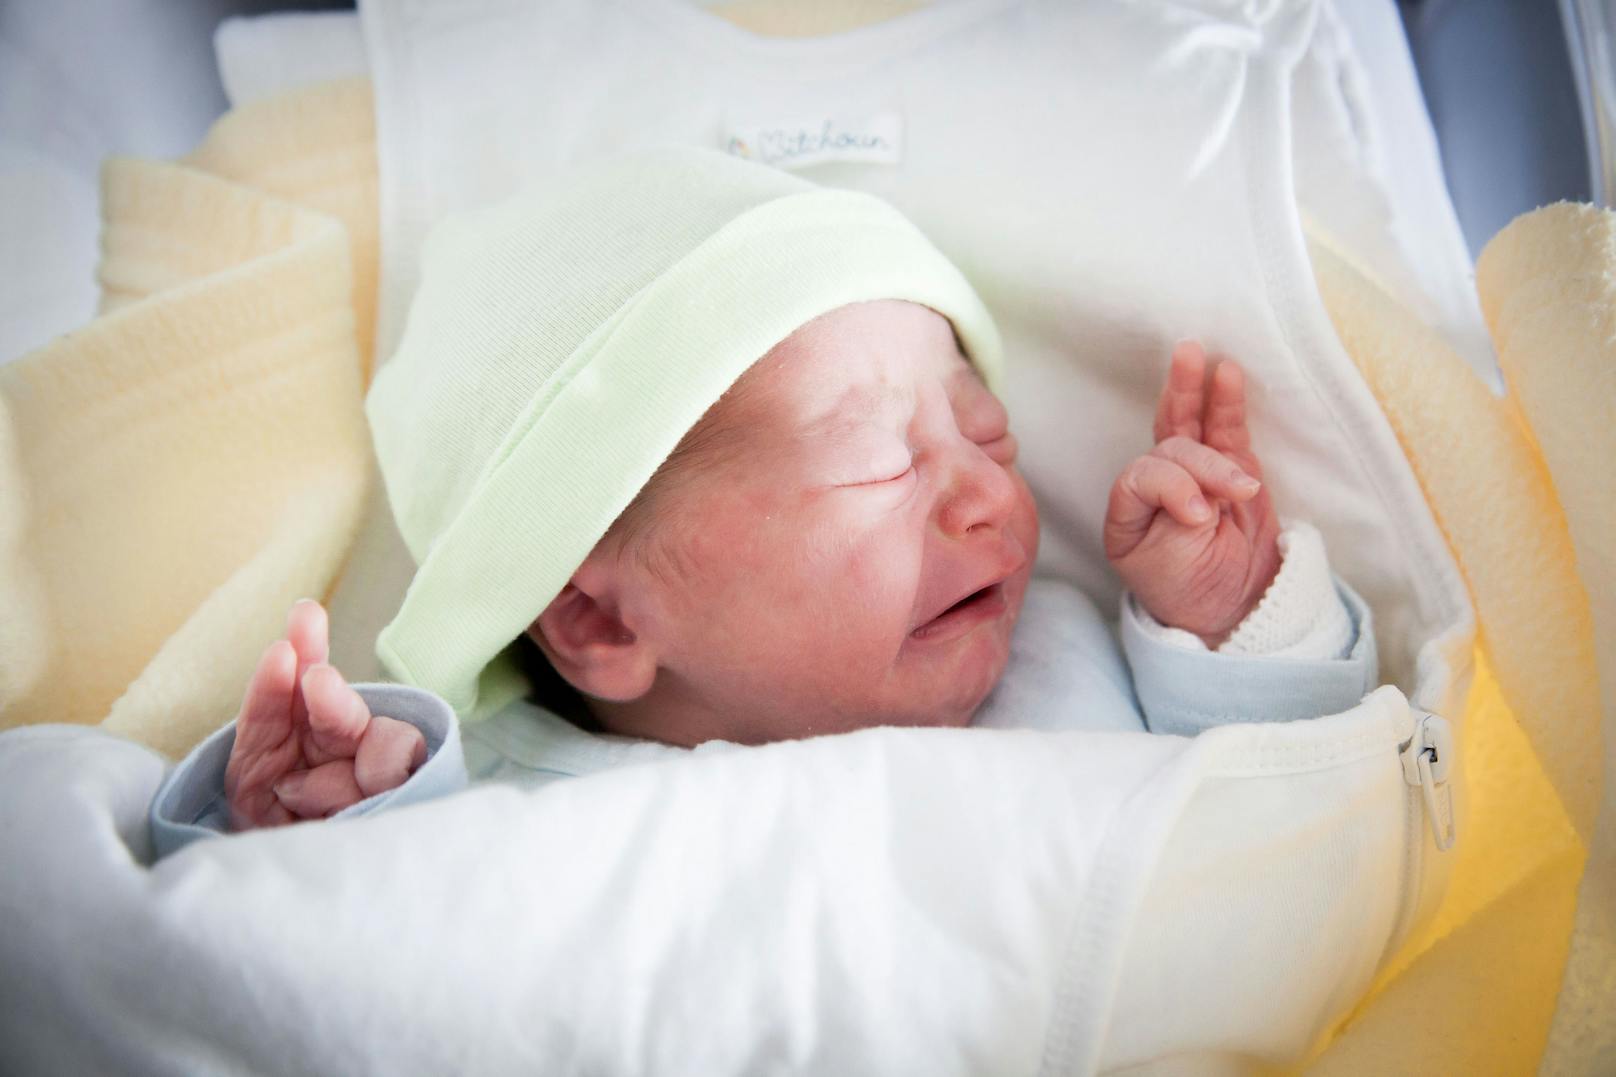 Innerhalb von einer Woche landeten ein Dutzend Neugeborene wegen Corona in der Notaufnahme des Lenval-Krankenhauses. (Symbolbild)